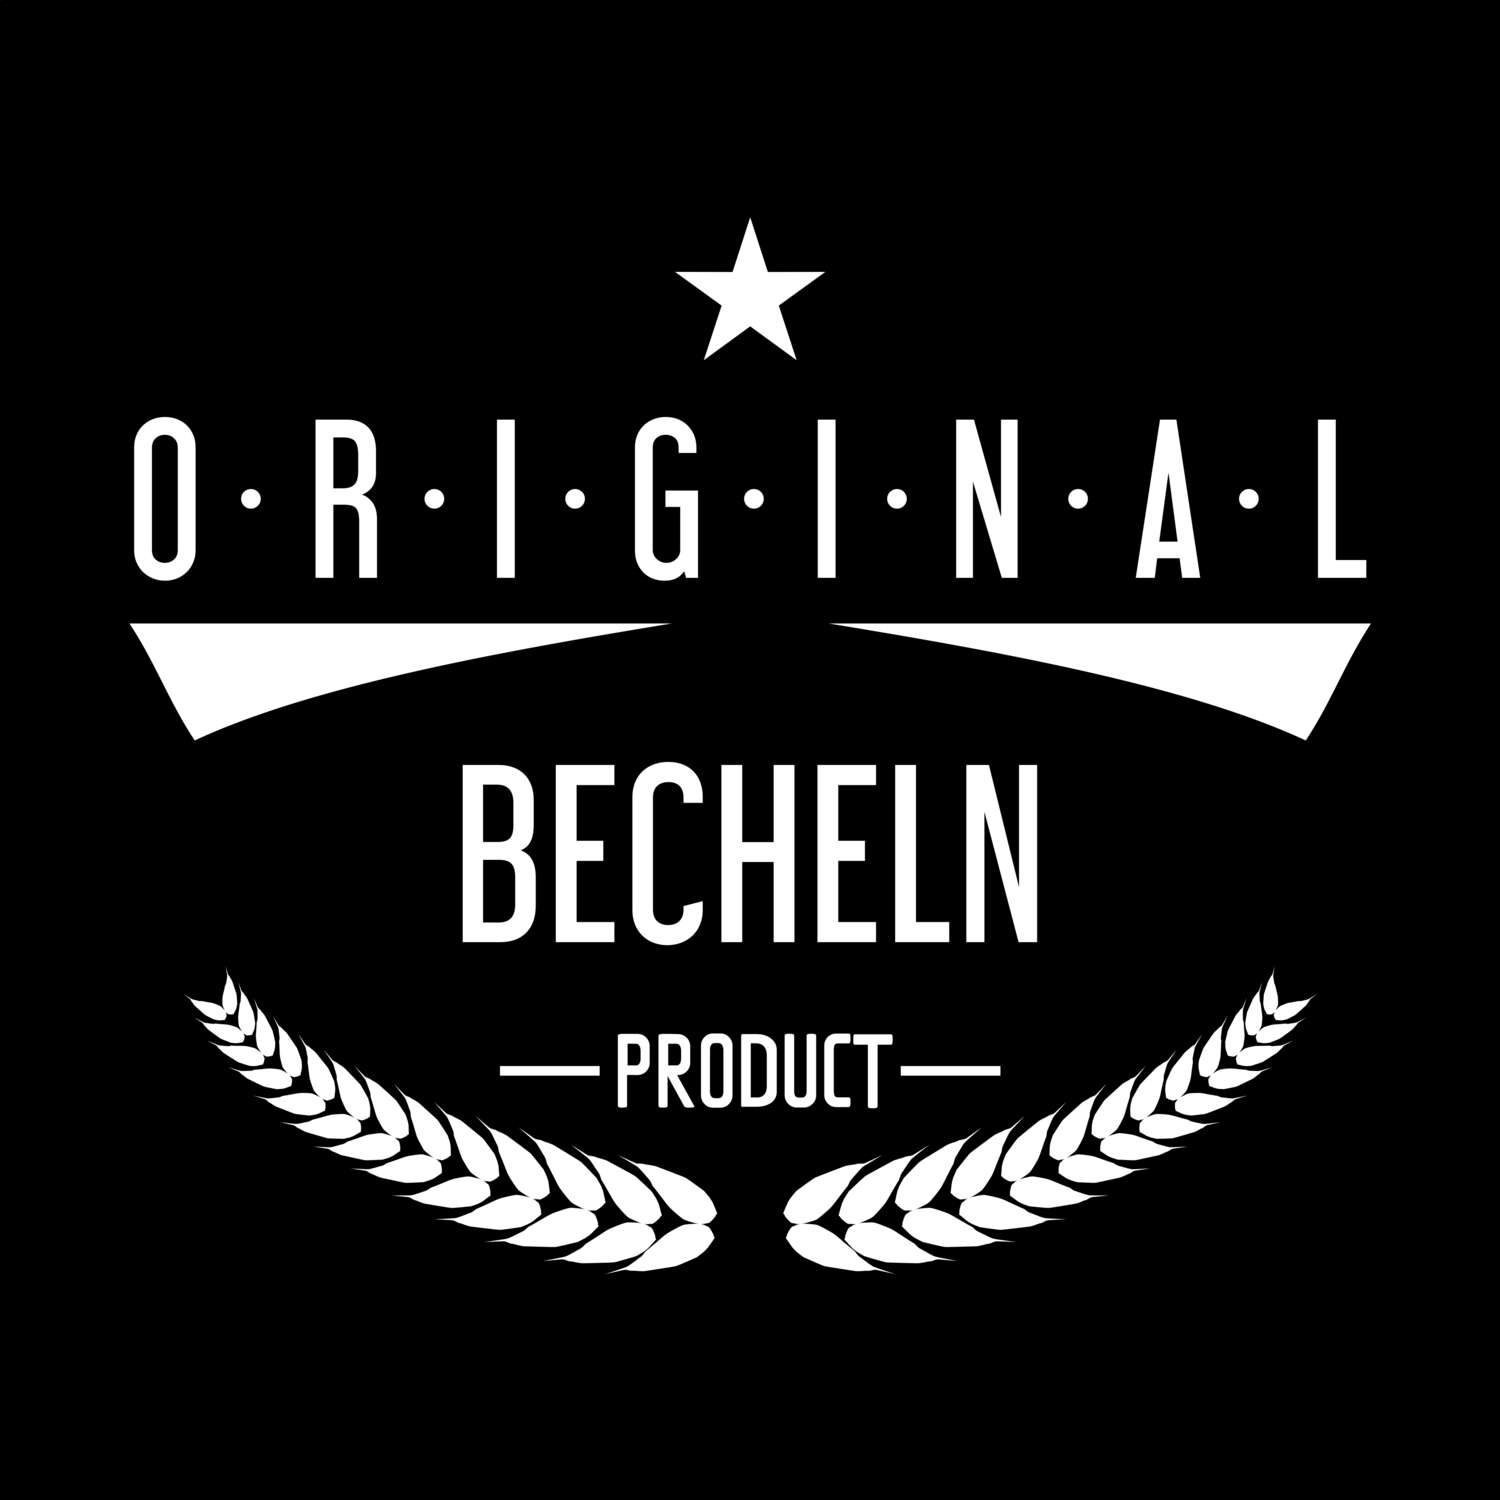 Becheln T-Shirt »Original Product«